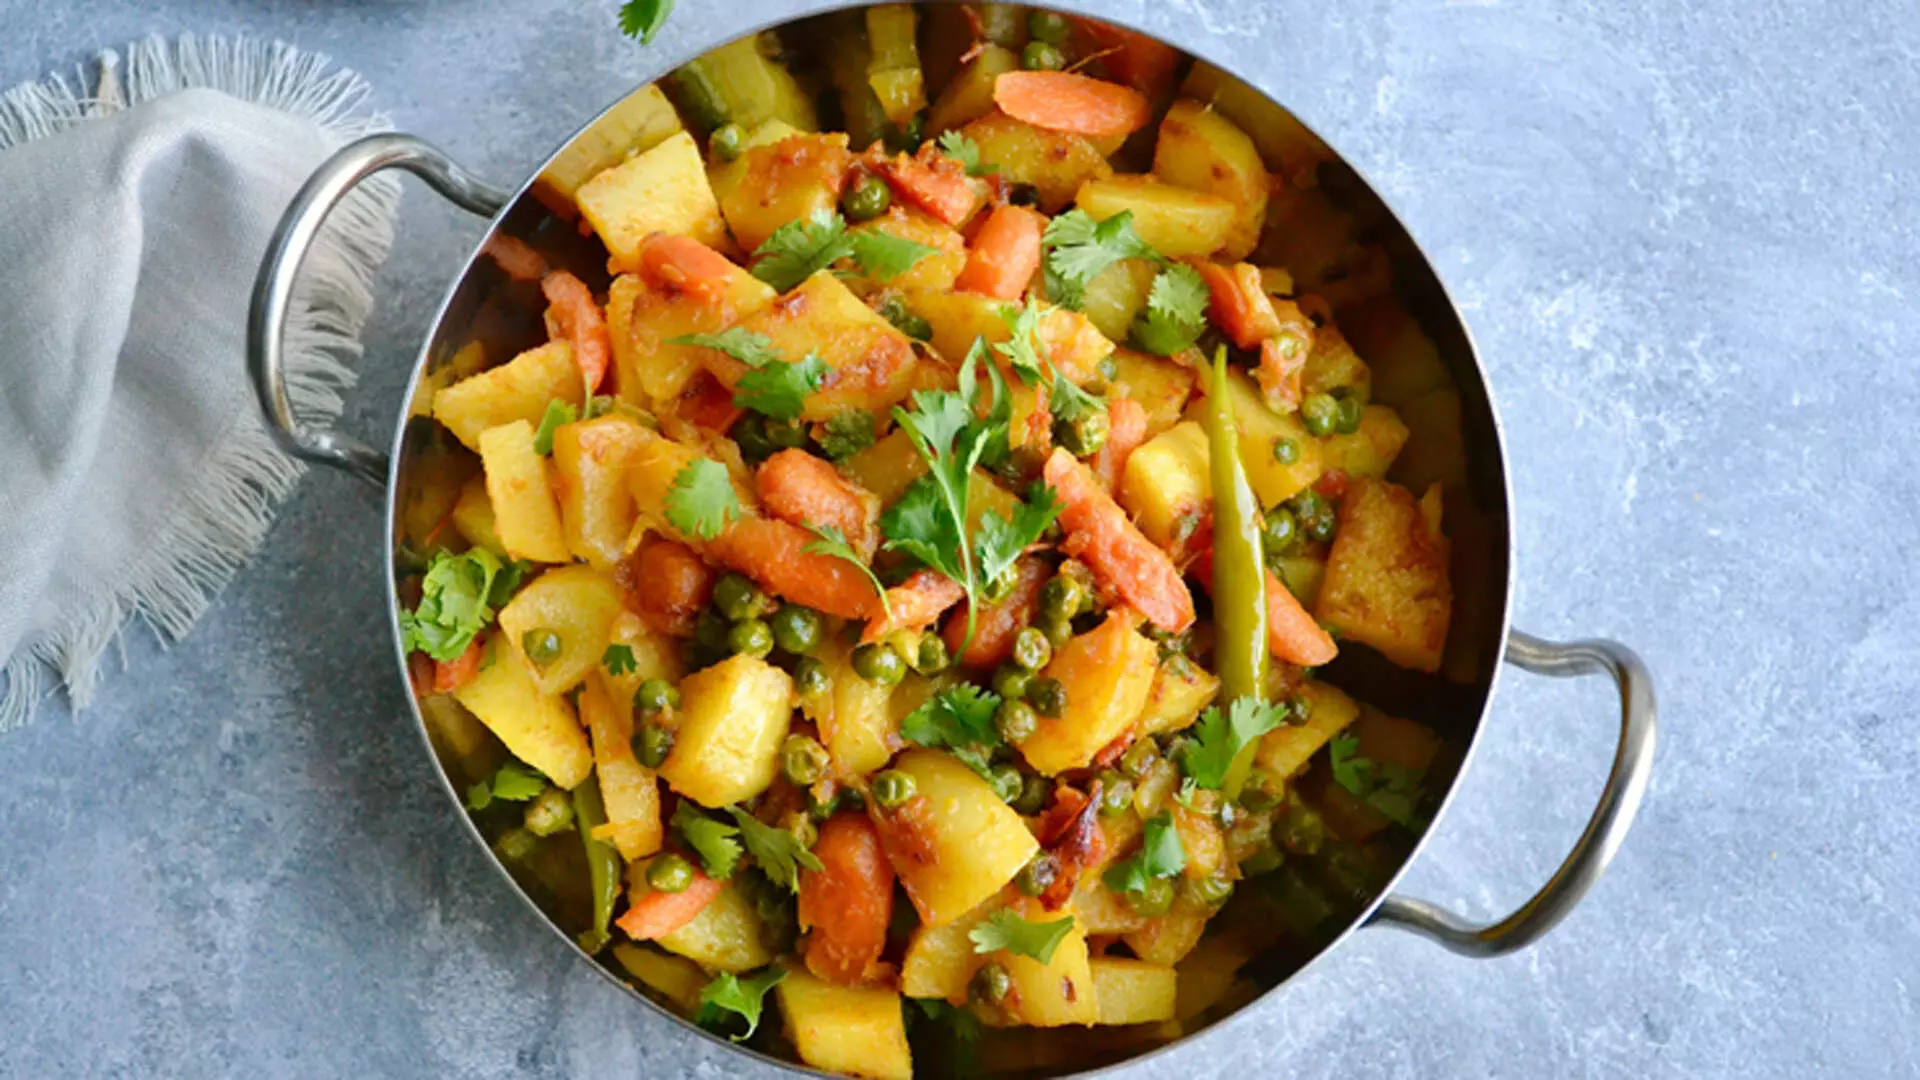 पंजाबी स्टाइल में बनाएं आलू गाजर मटर की सब्जी, रेसिपी